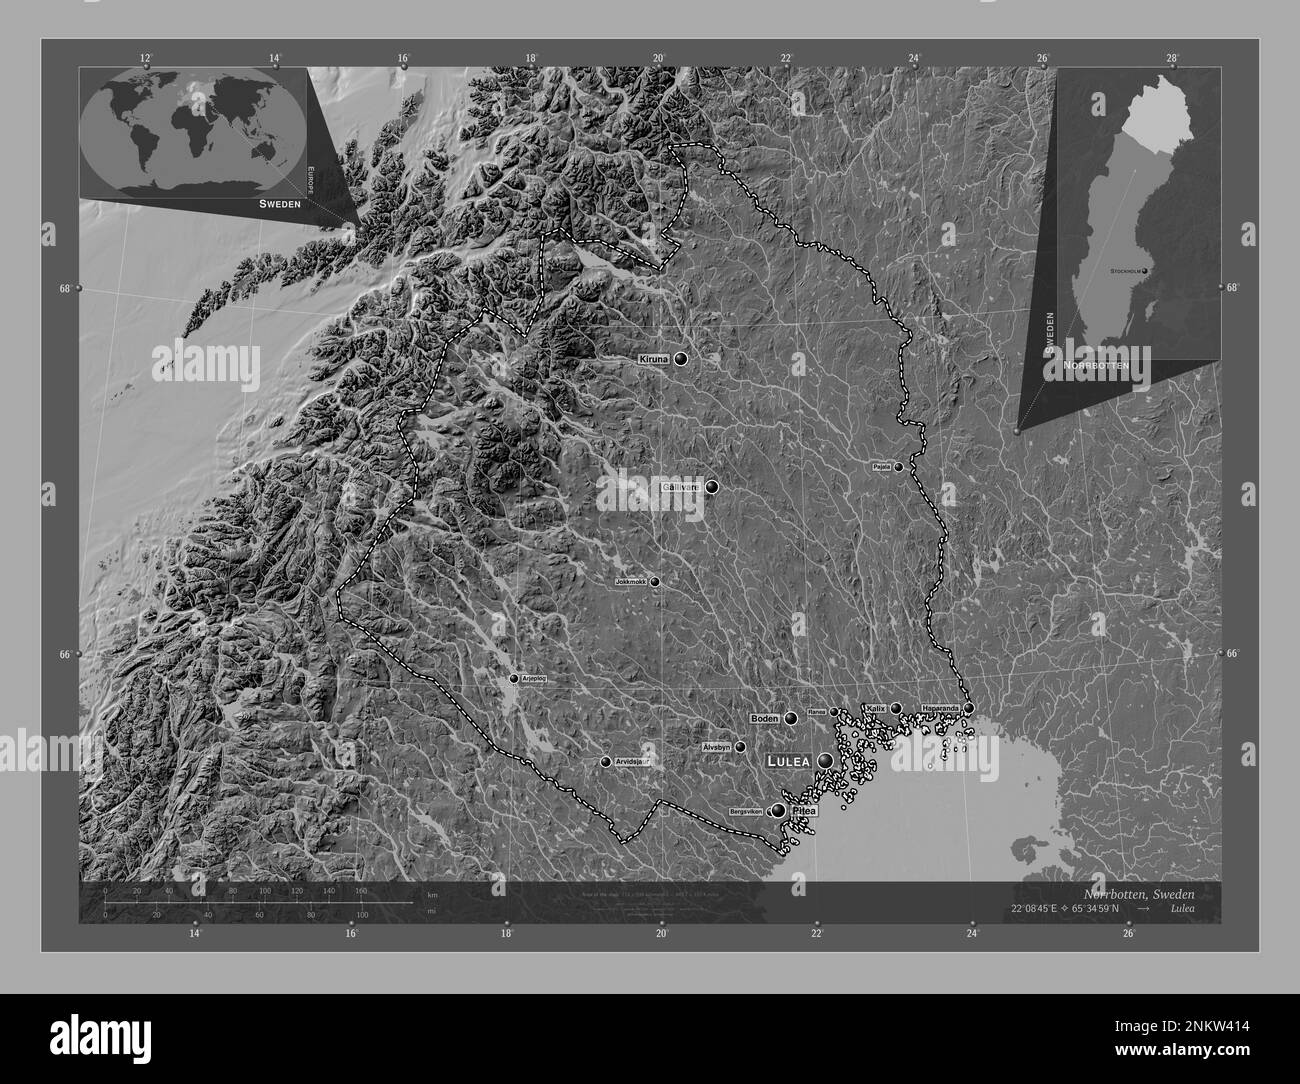 Norrbotten, contea di Svezia. Mappa altimetrica bilivello con laghi e fiumi. Località e nomi delle principali città della regione. Posizione ausiliaria angolo Foto Stock